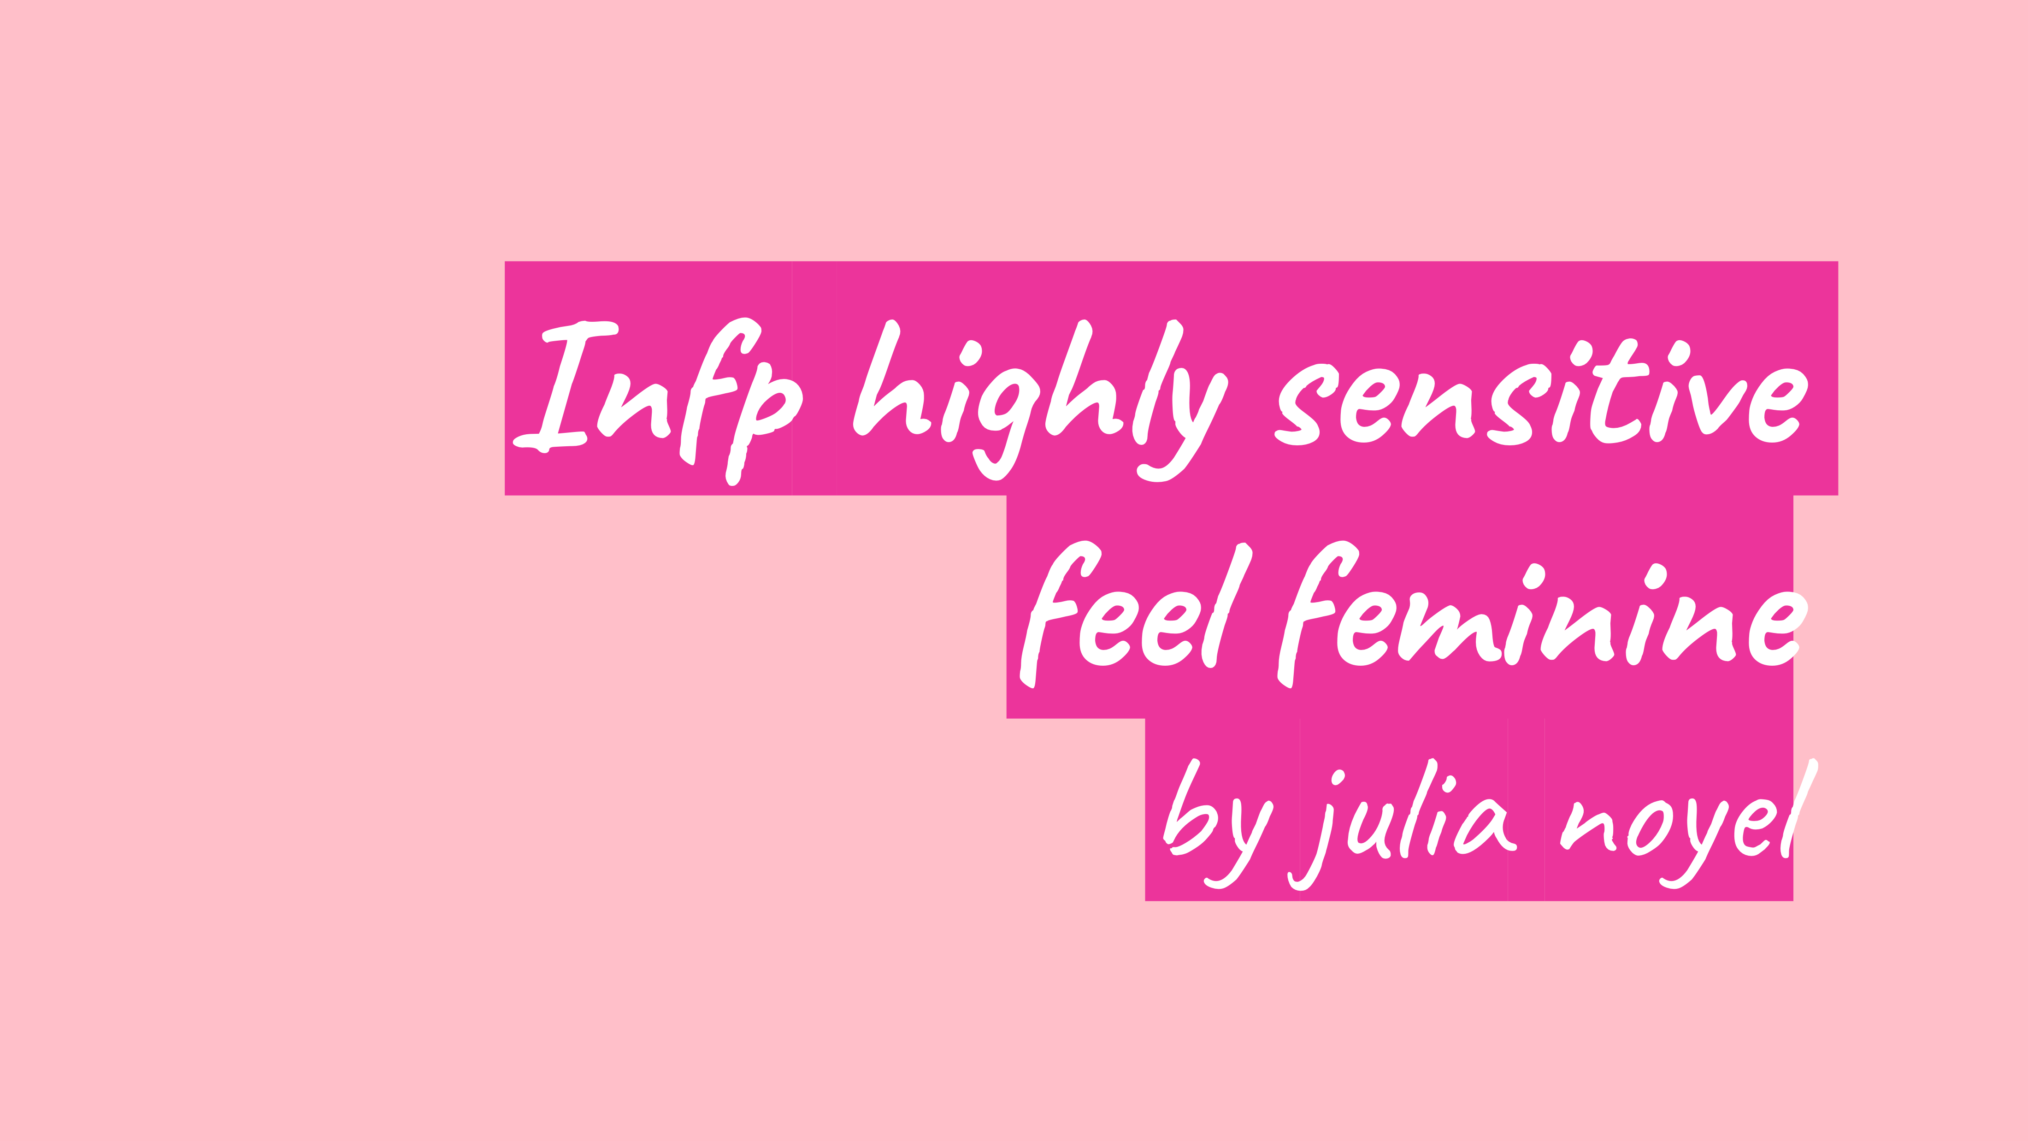 Infp highly sensitive feel feminine by julia noyel